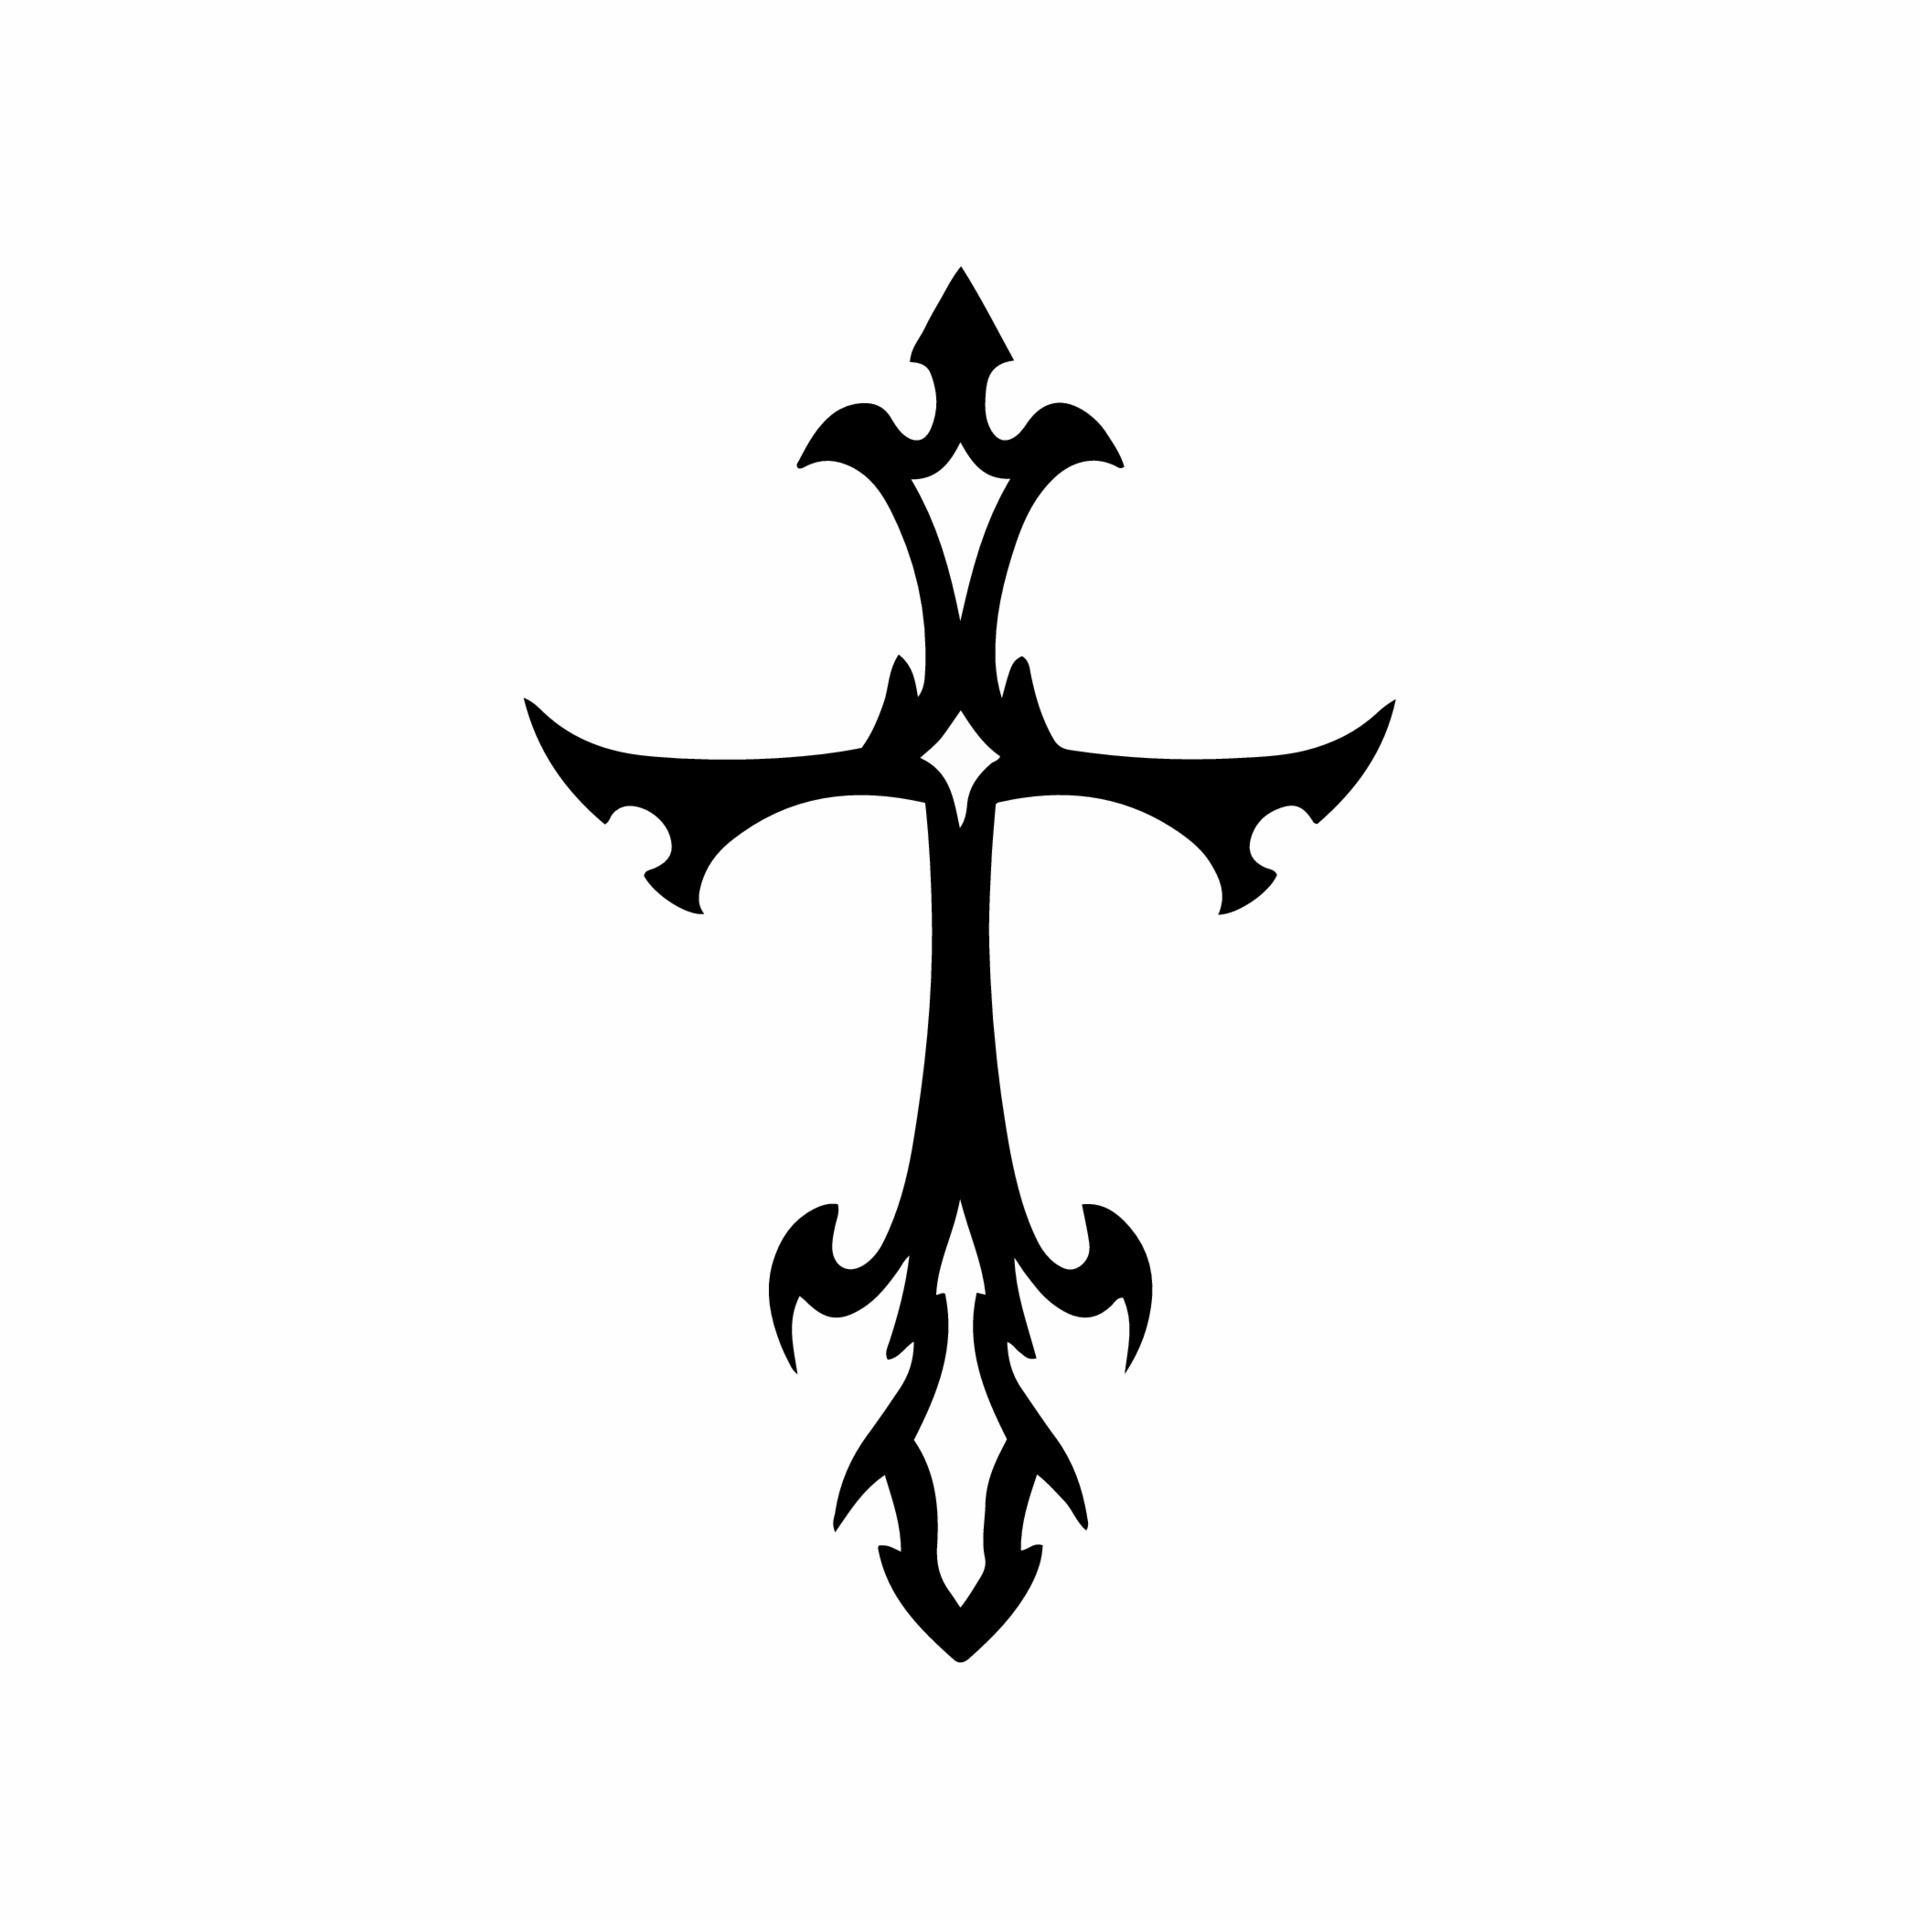 Christian Cross Symbol. Tribal Tattoo Design. Stencil Vector Illustration 14398109 Vector Art at Vecteezy